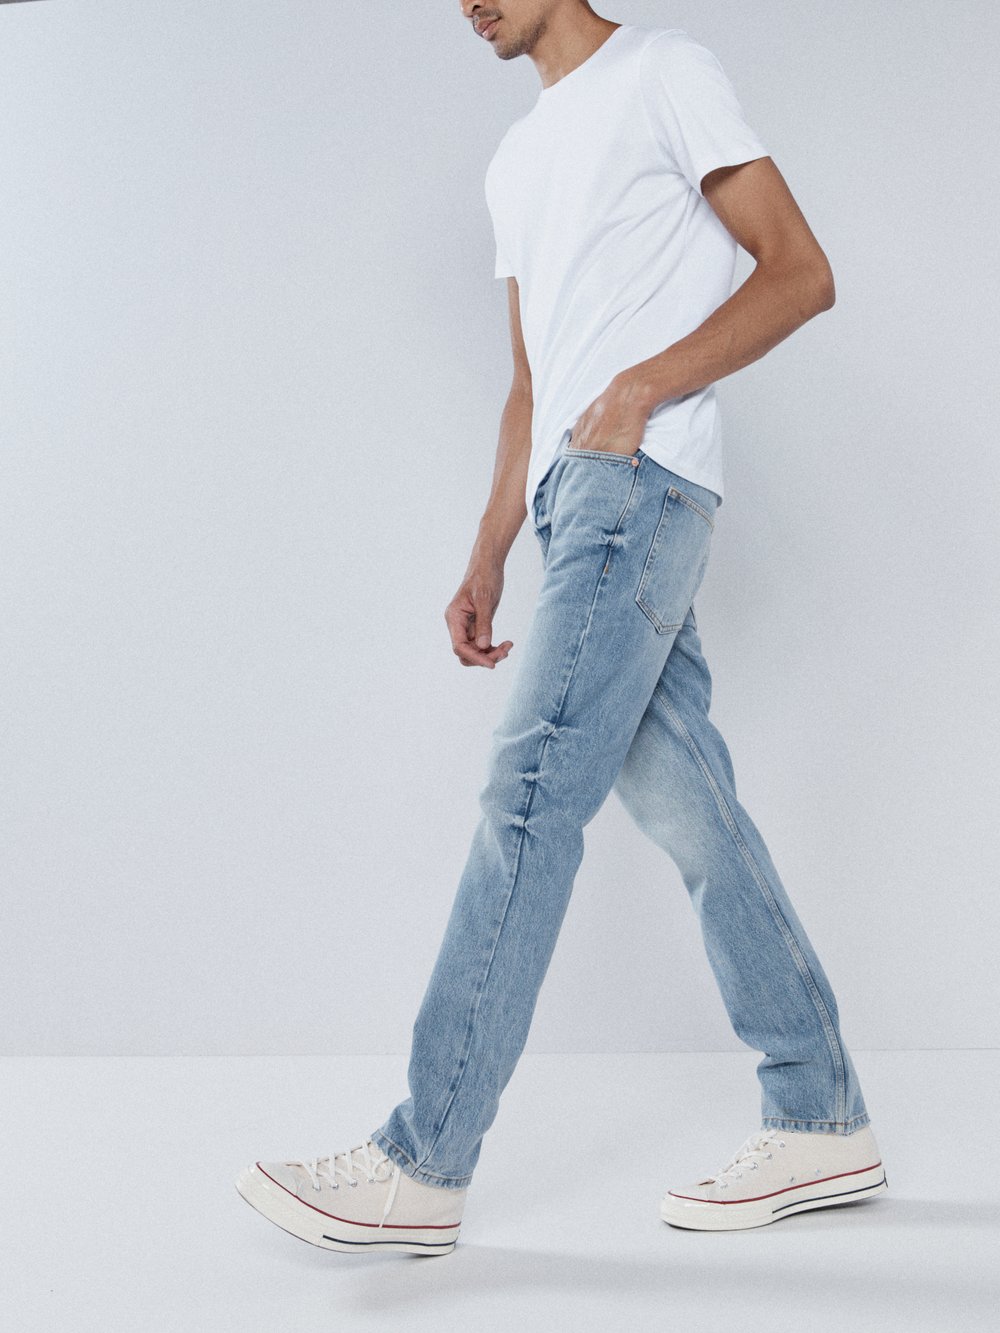 Узкие джинсы line из органического материала Raey, синий